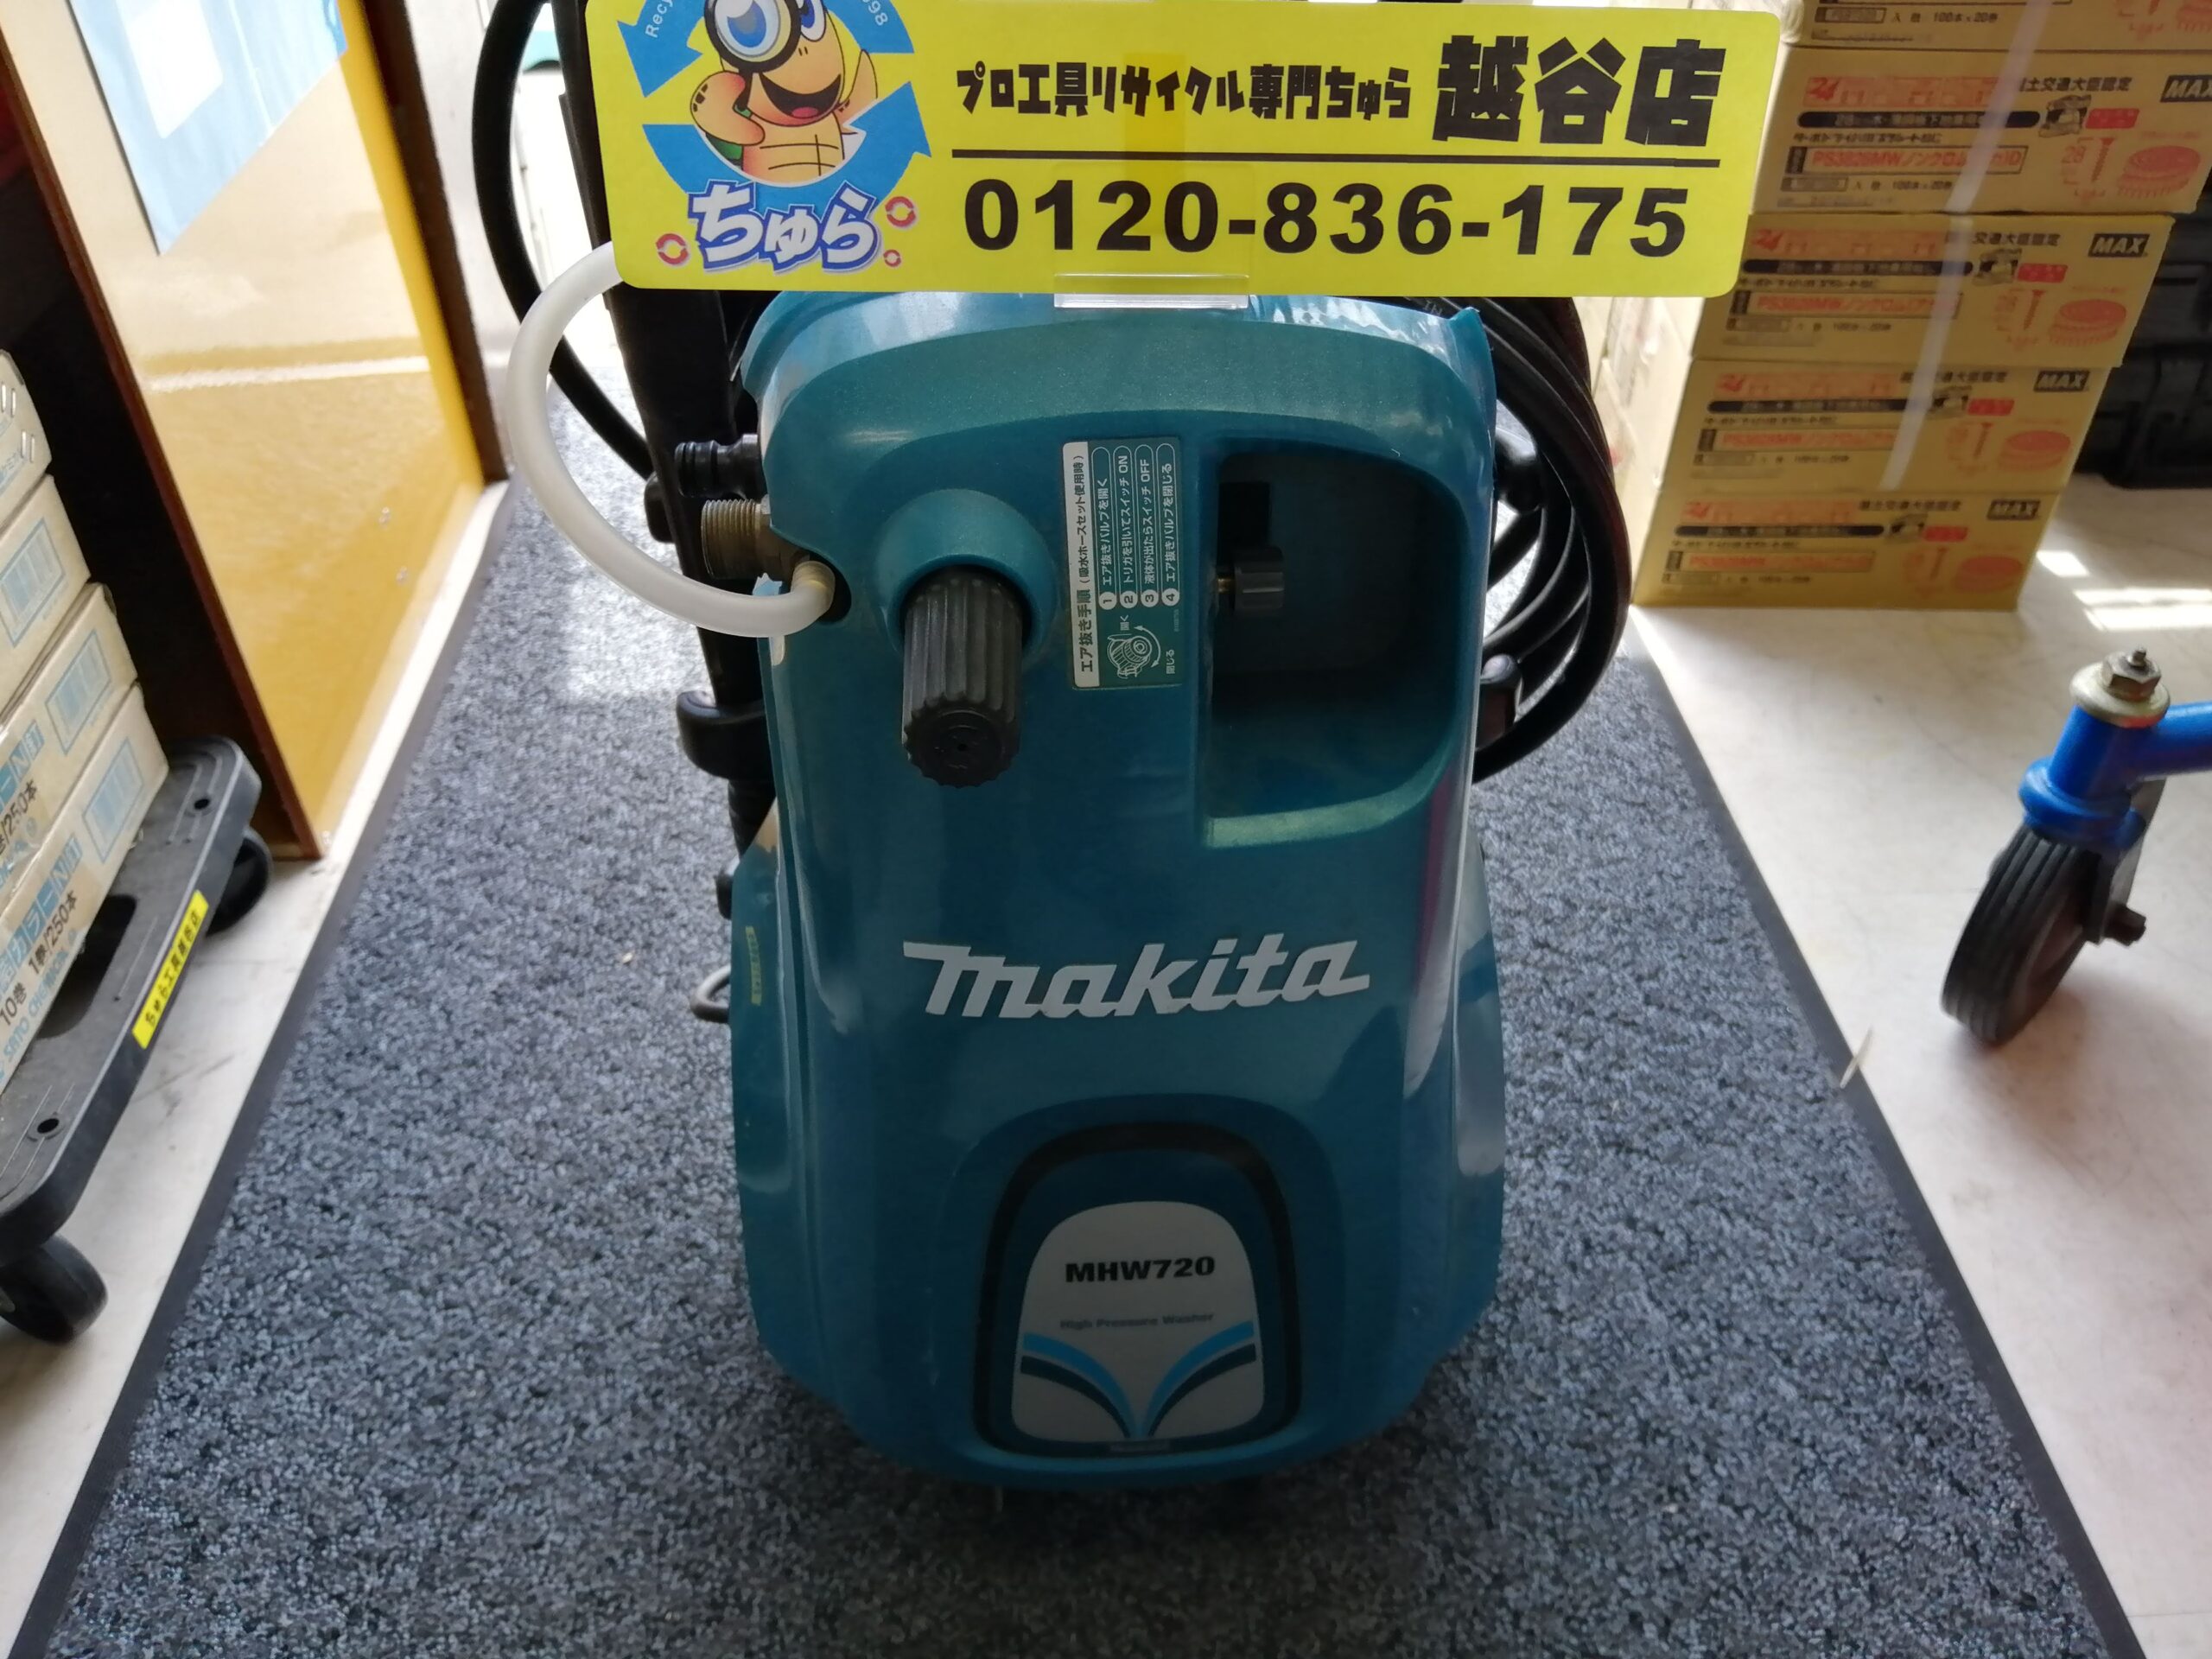 新作 はないちもんめマキタ Makita 高圧洗浄機 MHW720 welovedexter.com